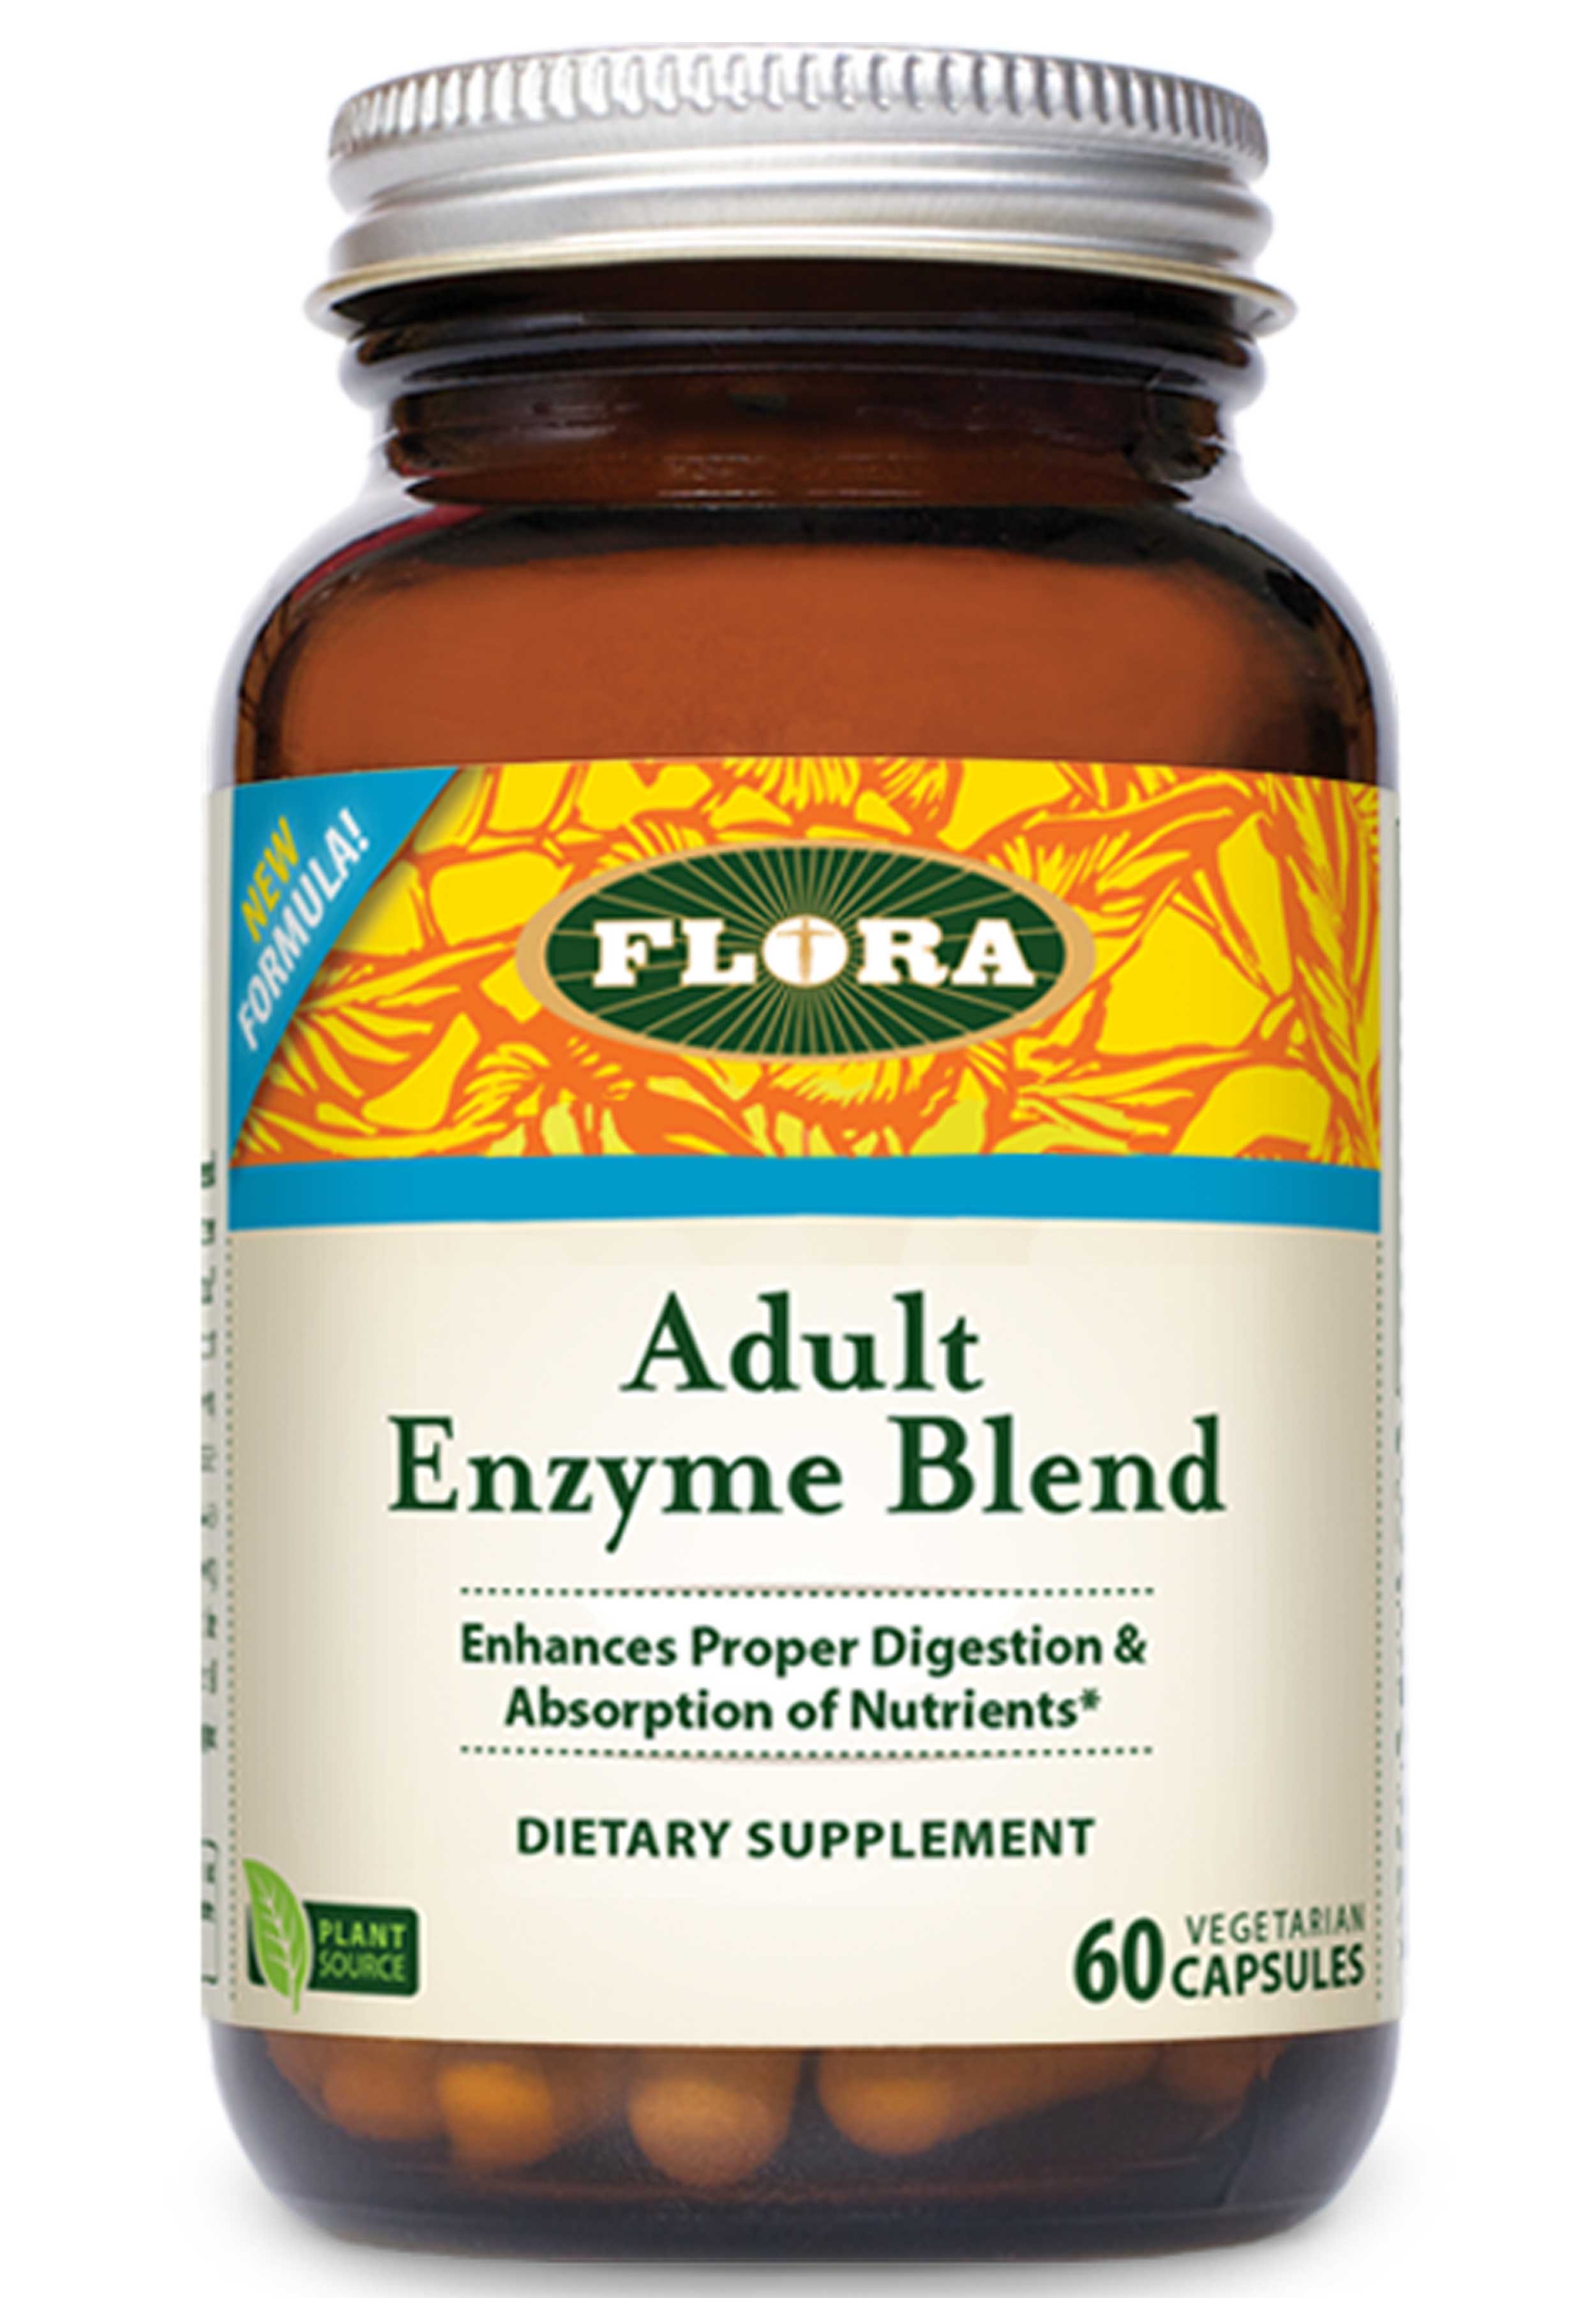 Flora Adult Enzyme Blend